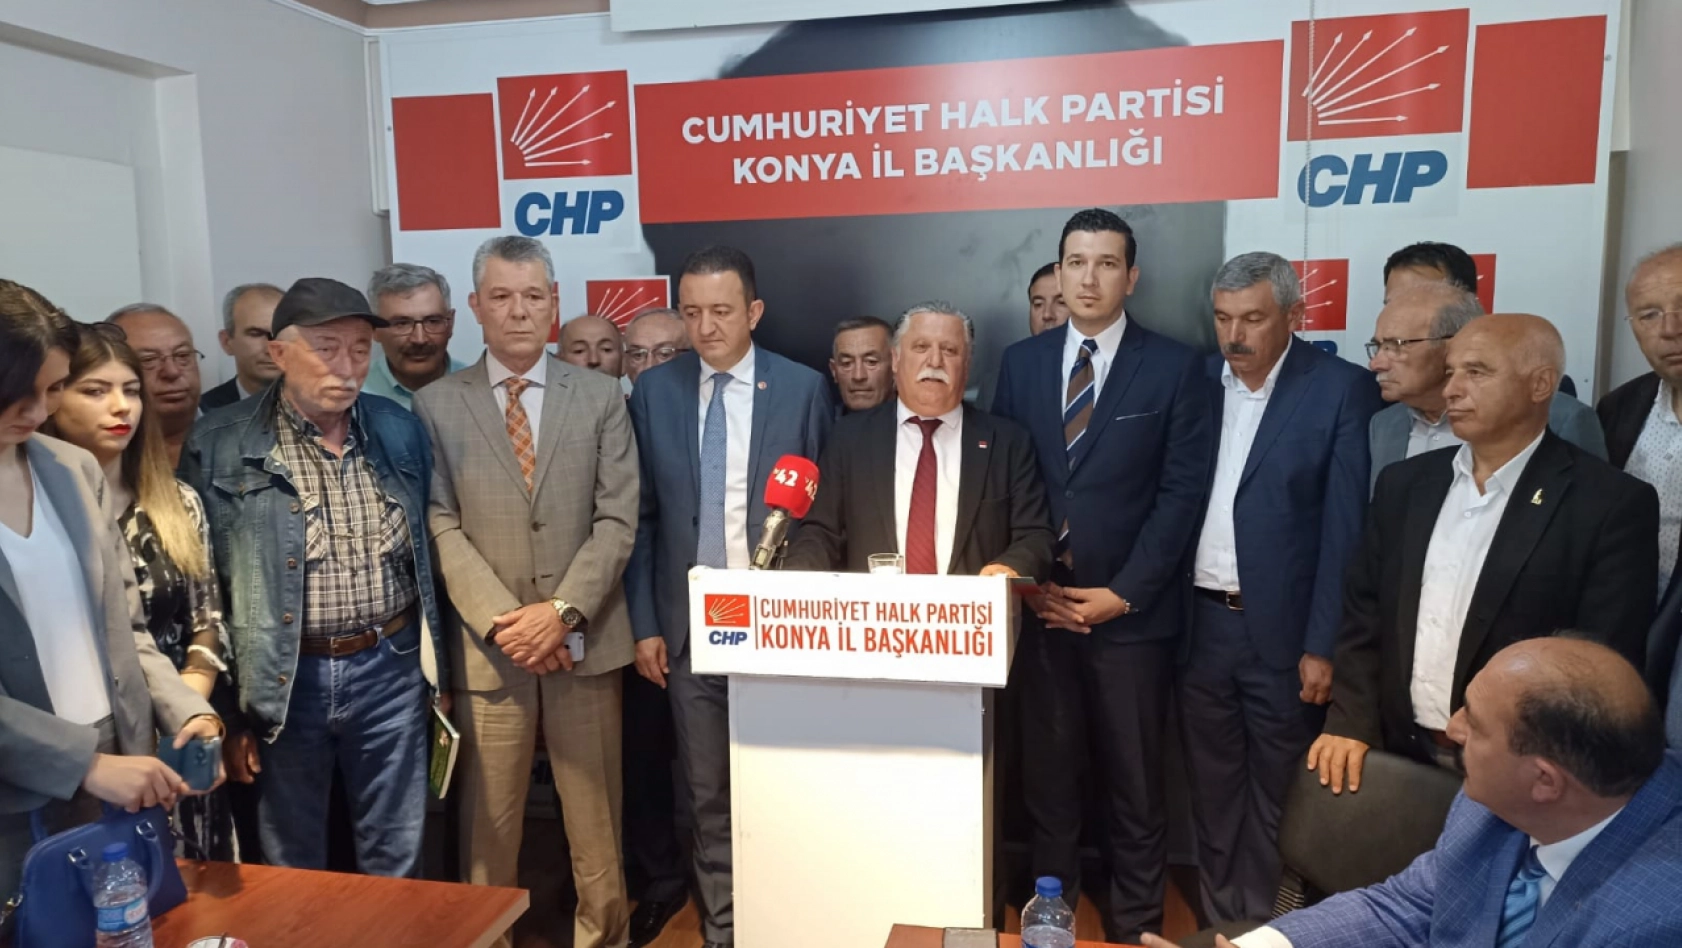 Konya'da oyu artan tek parti CHP